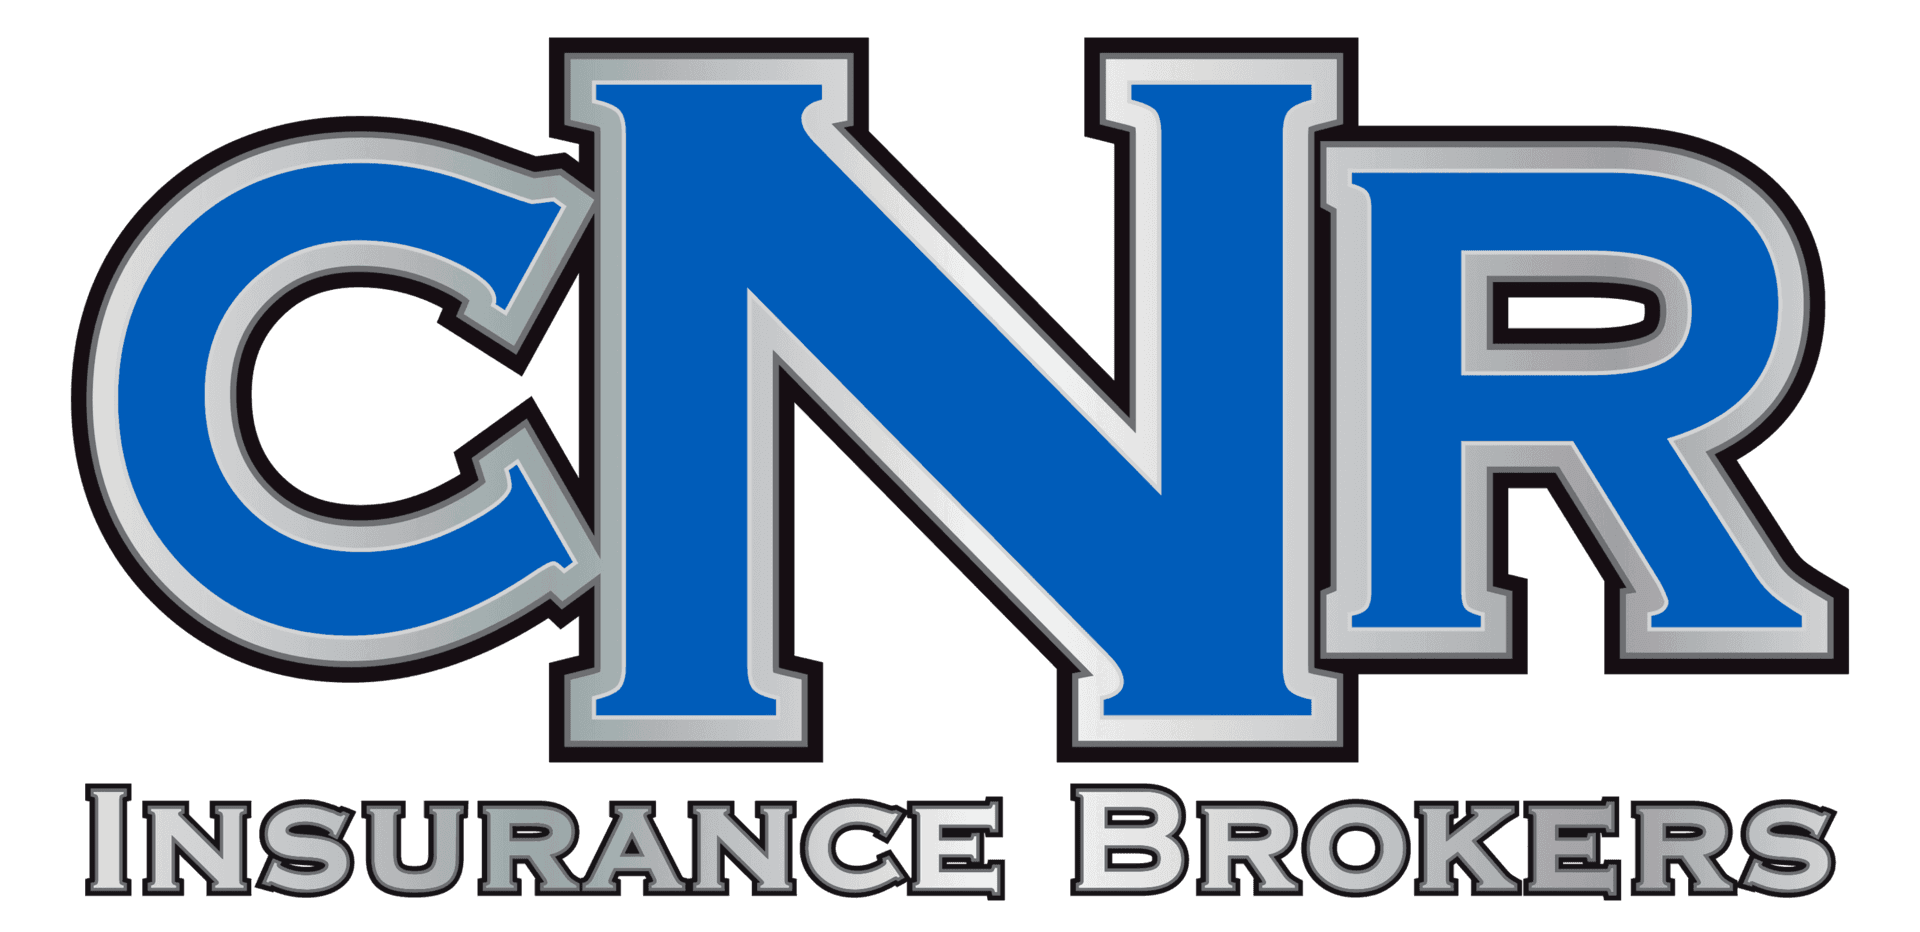 cnr insurance brokers logo